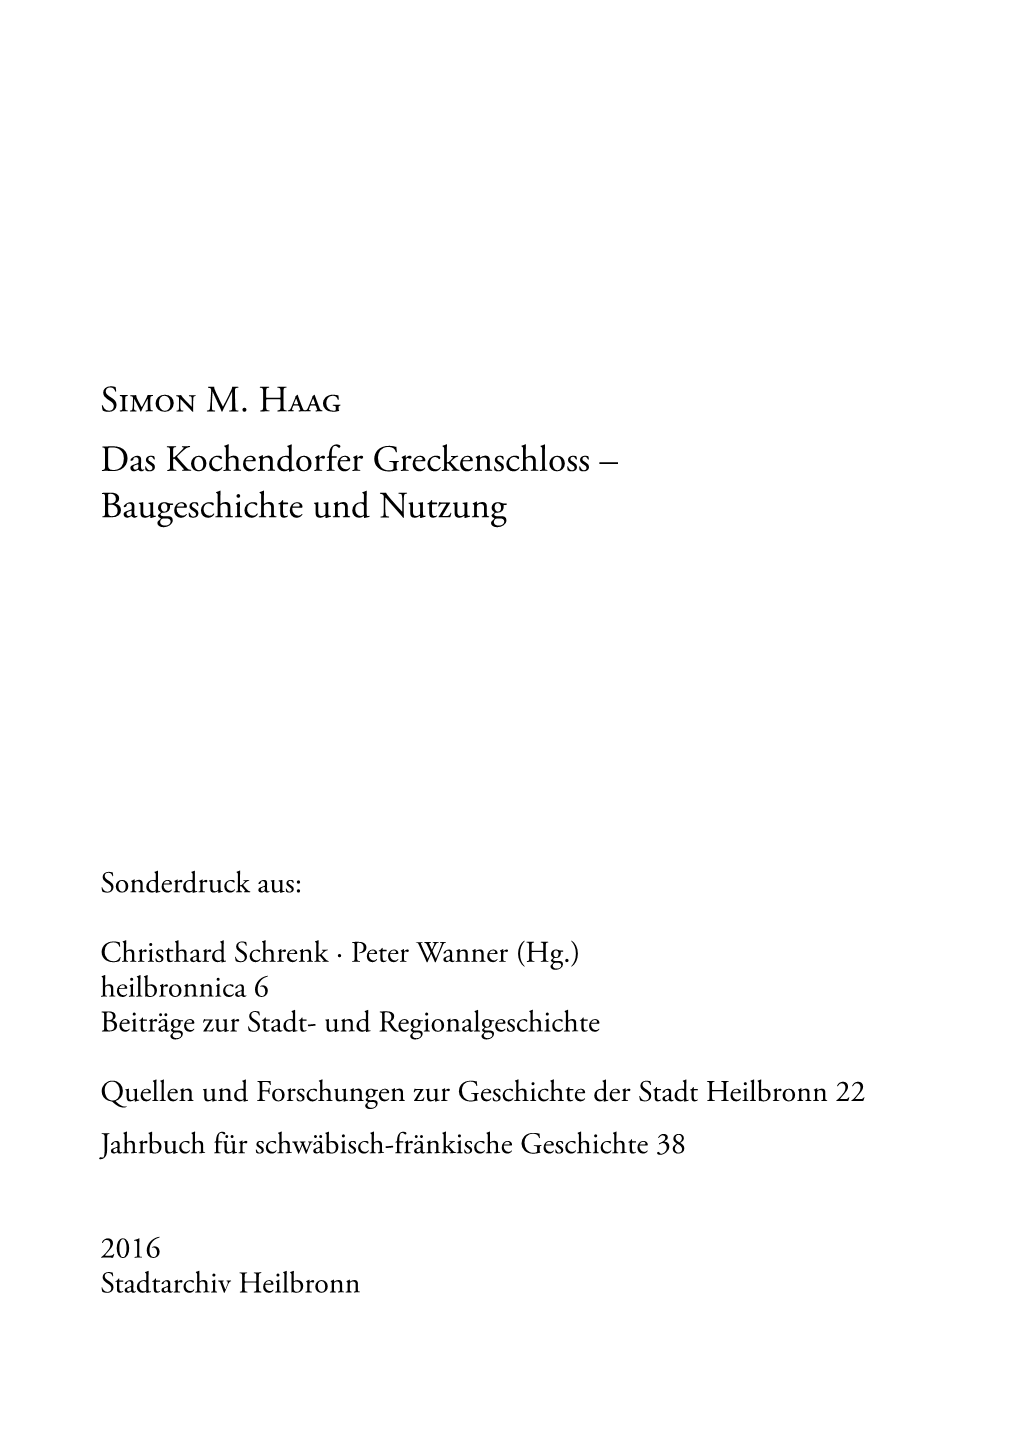 Simon M. Haag Das Kochendorfer Greckenschloss – Baugeschichte Und Nutzung